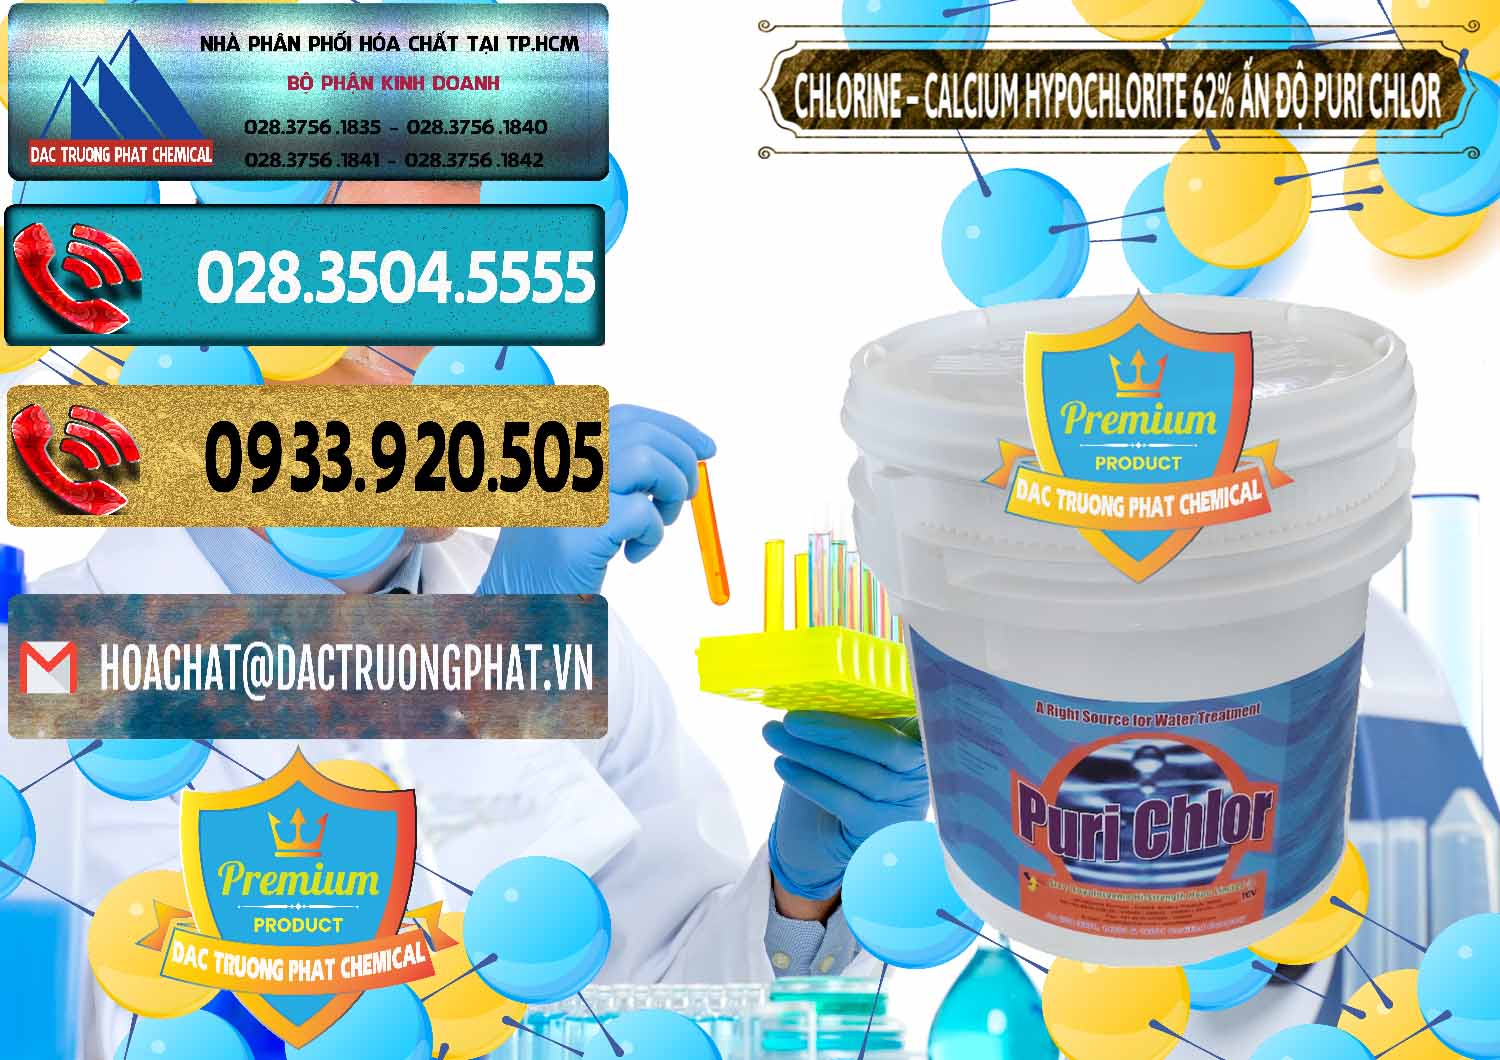 Cung cấp _ bán Chlorine – Clorin 62% Puri Chlo Ấn Độ India - 0052 - Đơn vị chuyên cung ứng _ phân phối hóa chất tại TP.HCM - hoachatdetnhuom.com